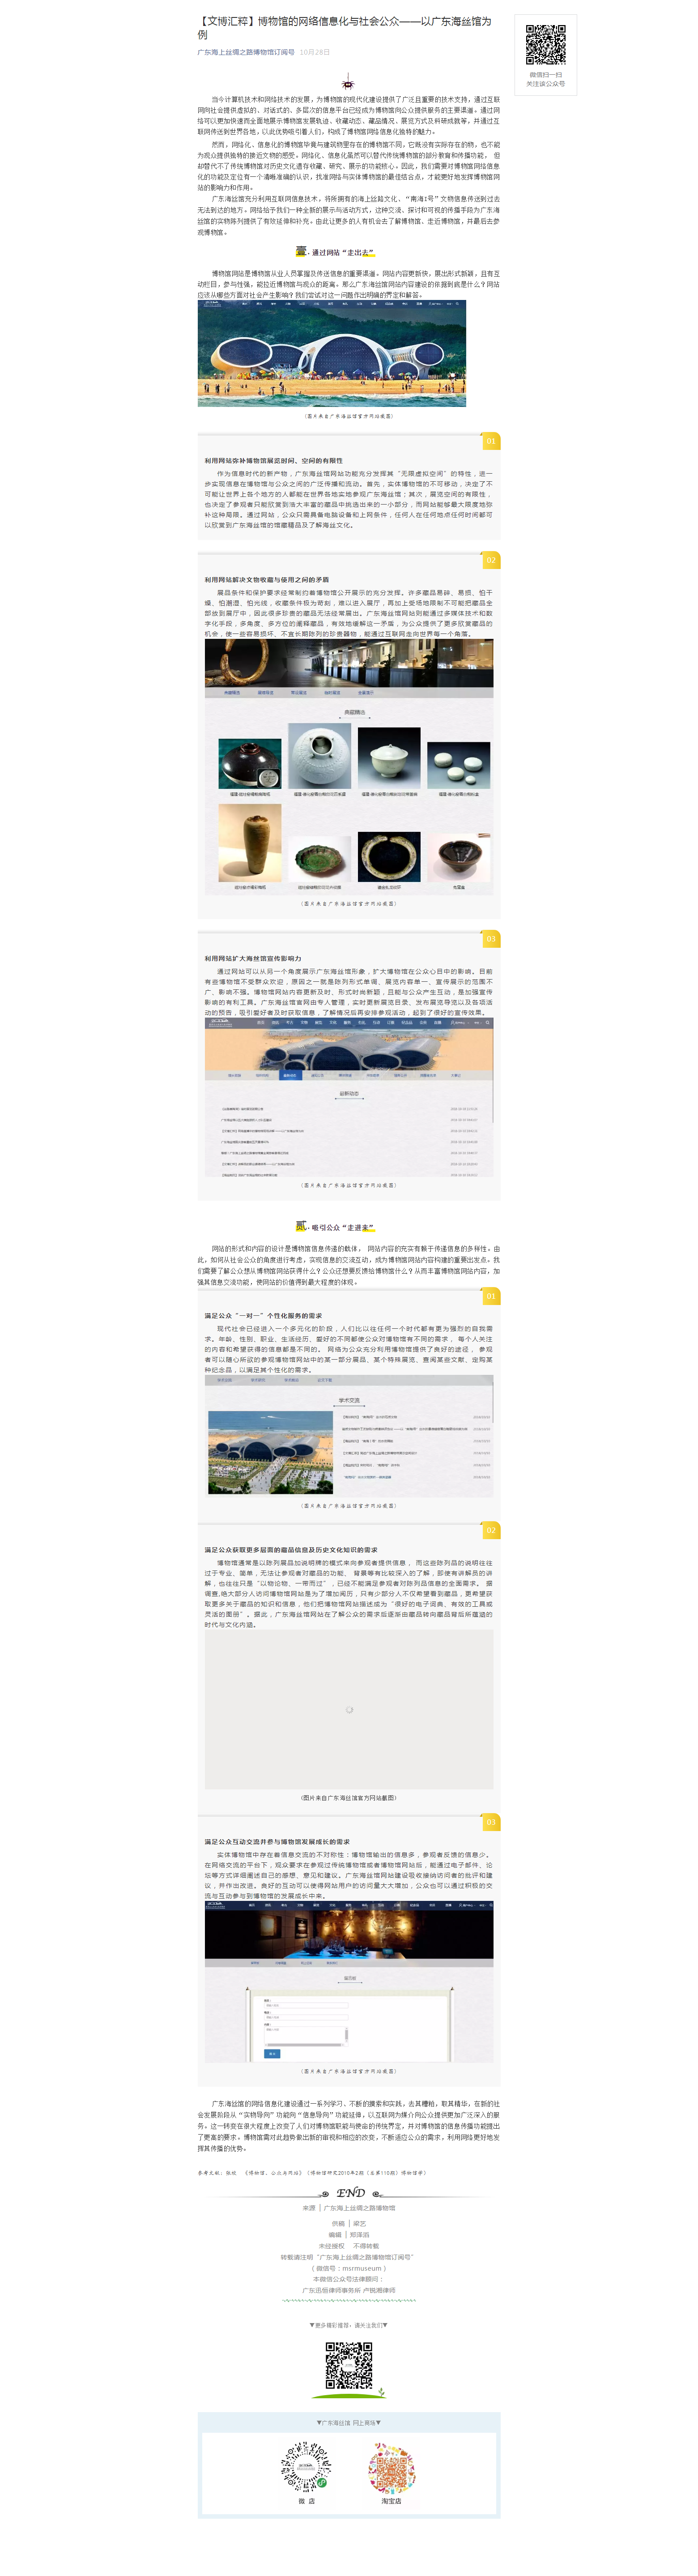 【文博汇粹】博物馆的网络信息化与社会公众——以广东海丝馆为例.png